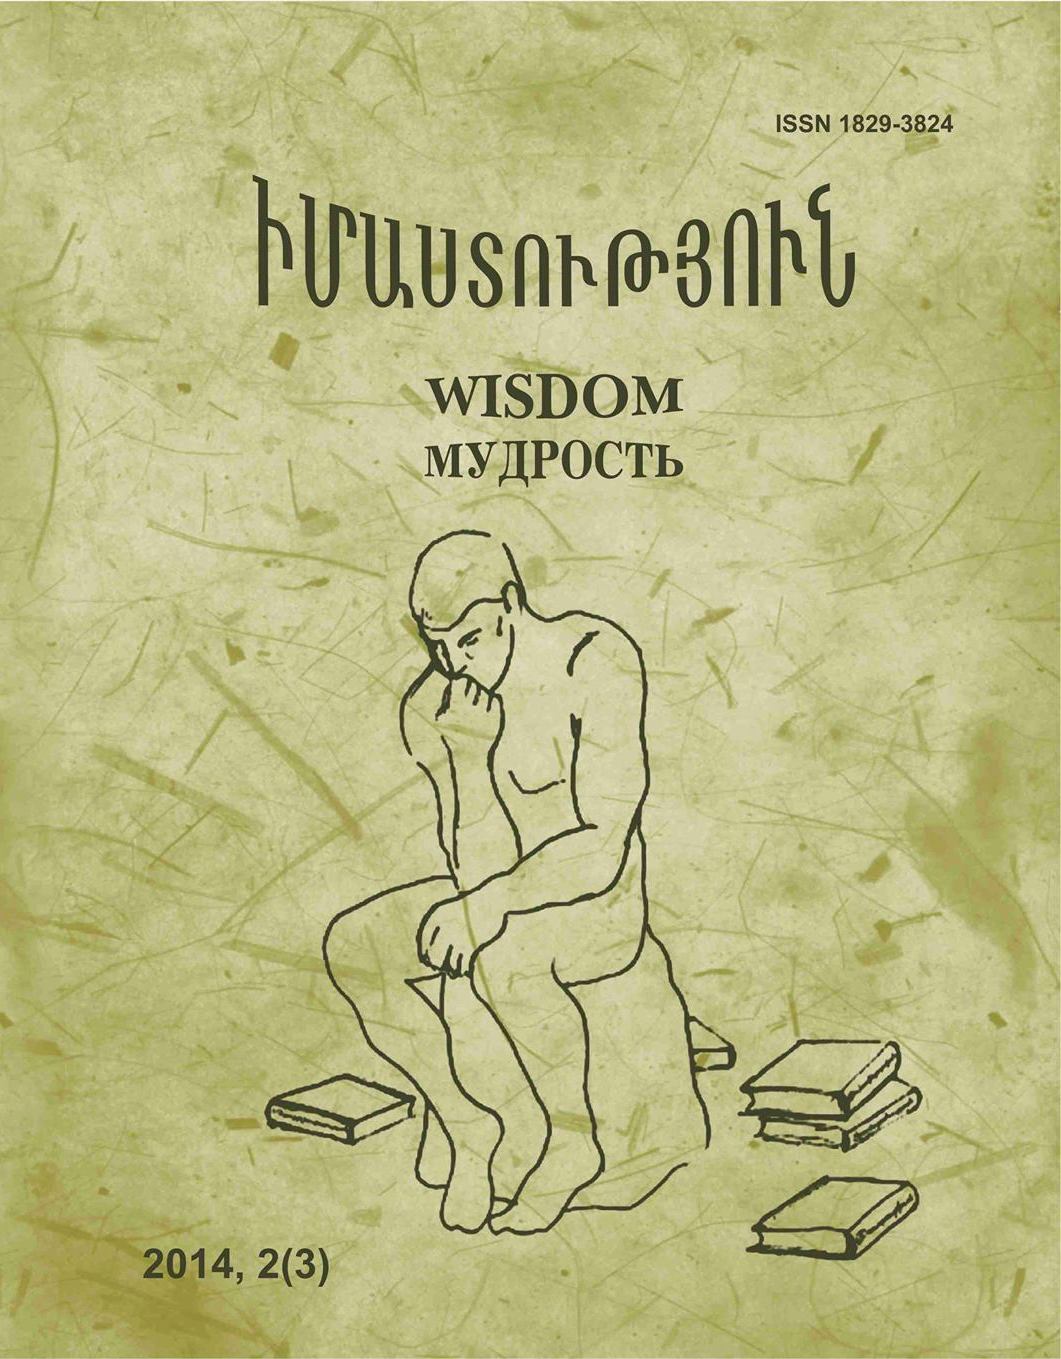 wisdom 3